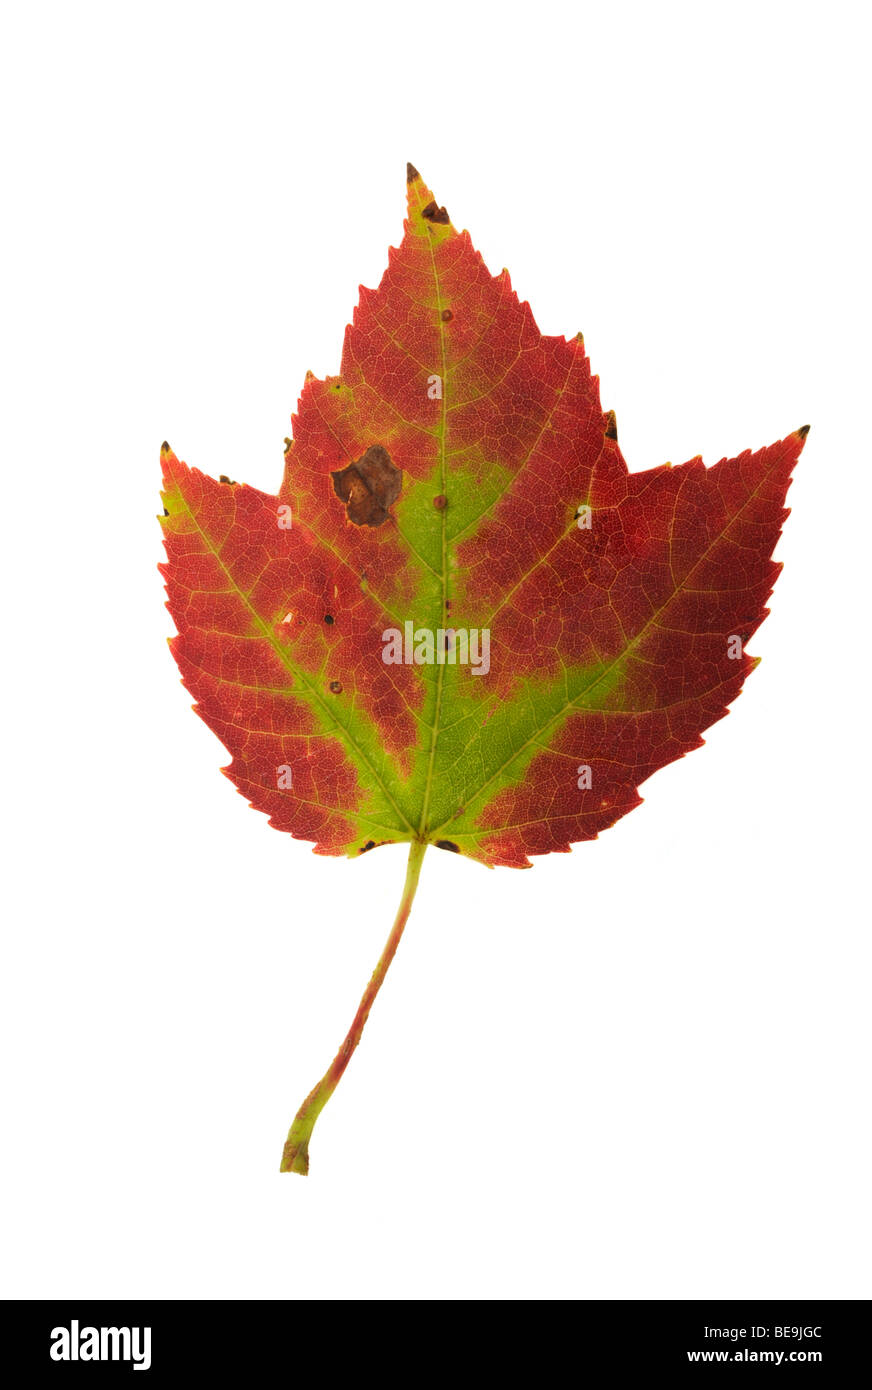 Maple leaf closeup Stock Photo